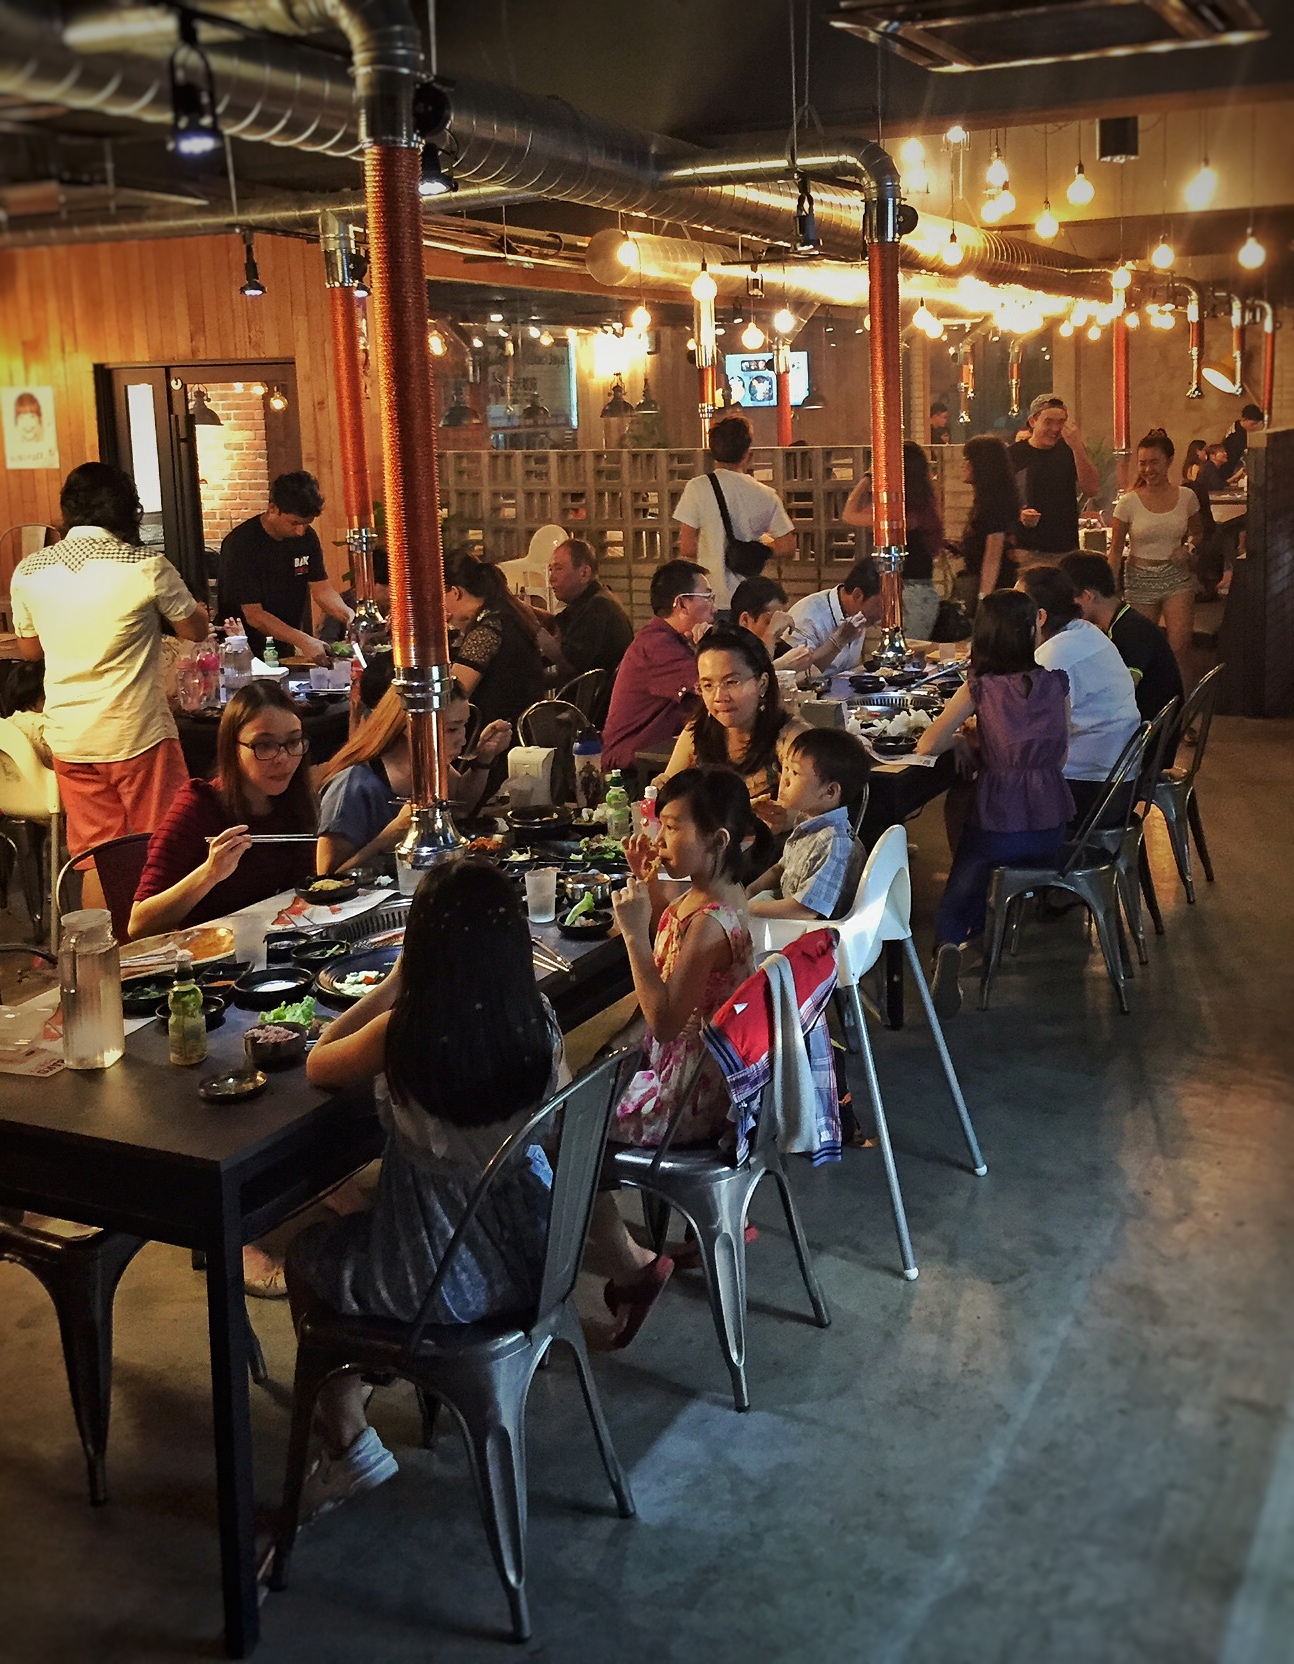 Sri Petaling Korean Buffet : Bako Korean BBQ @ Sri Petaling - Malaysia